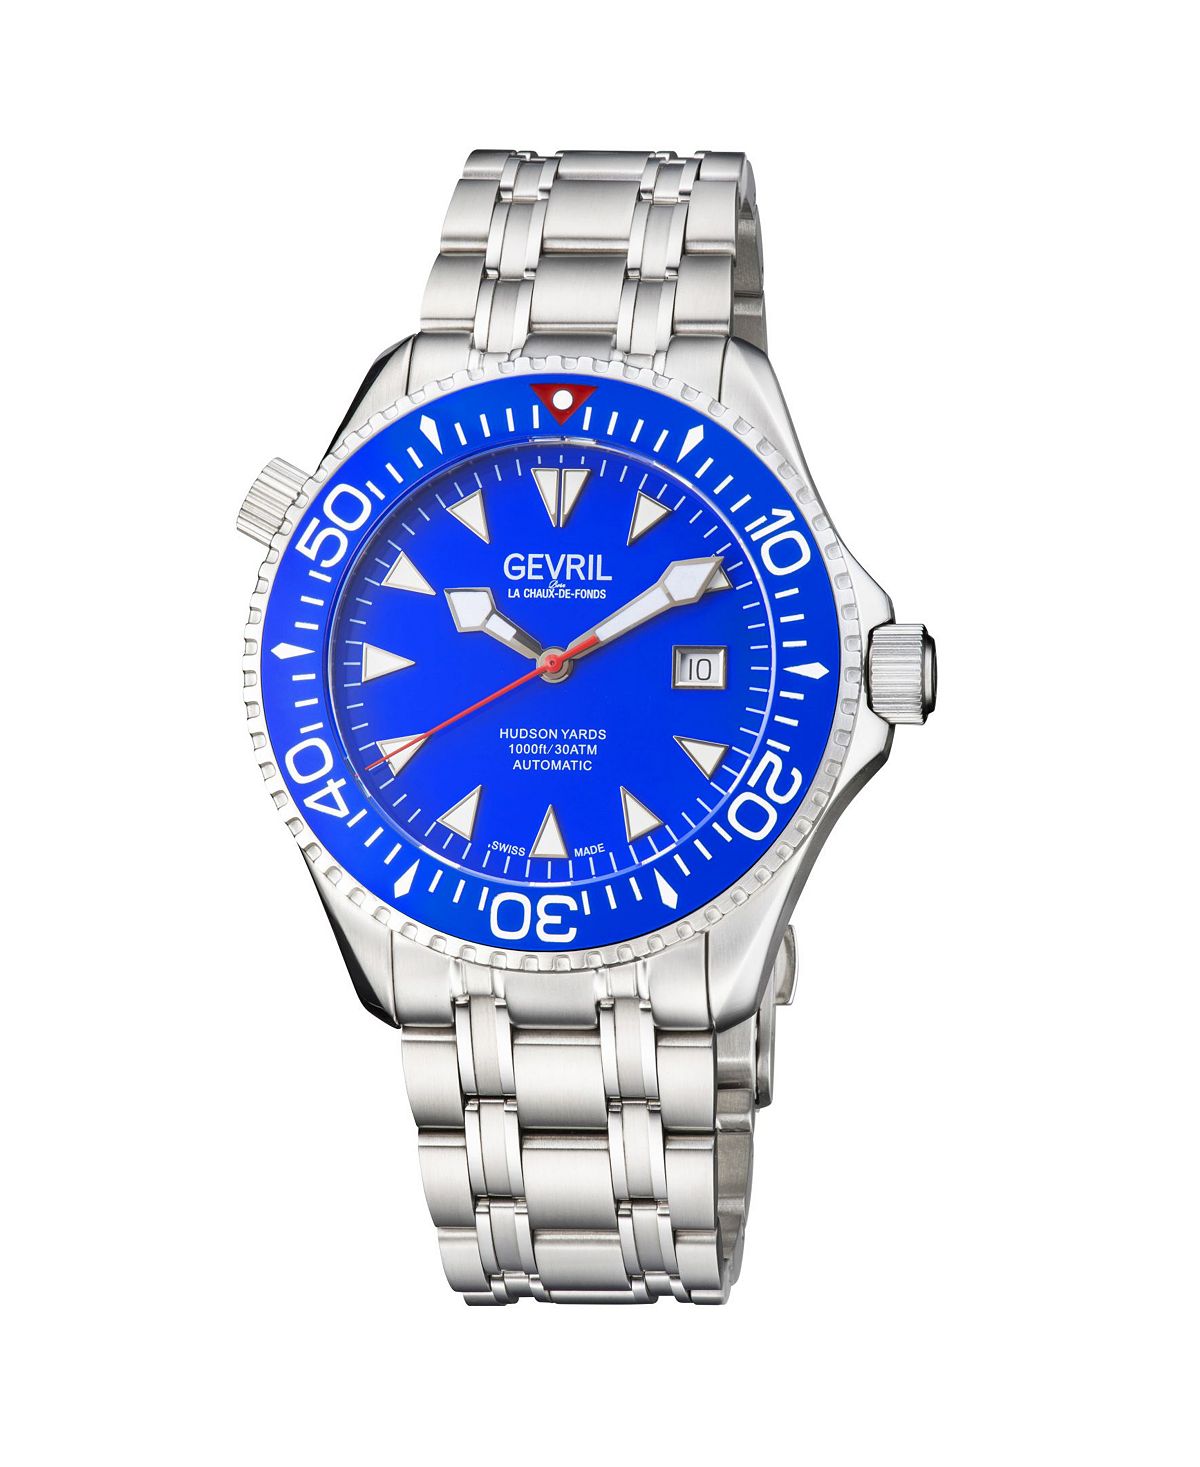 Мужские часы Hudson Yards 48801 швейцарские автоматические часы-браслет 43 мм Gevril цена и фото